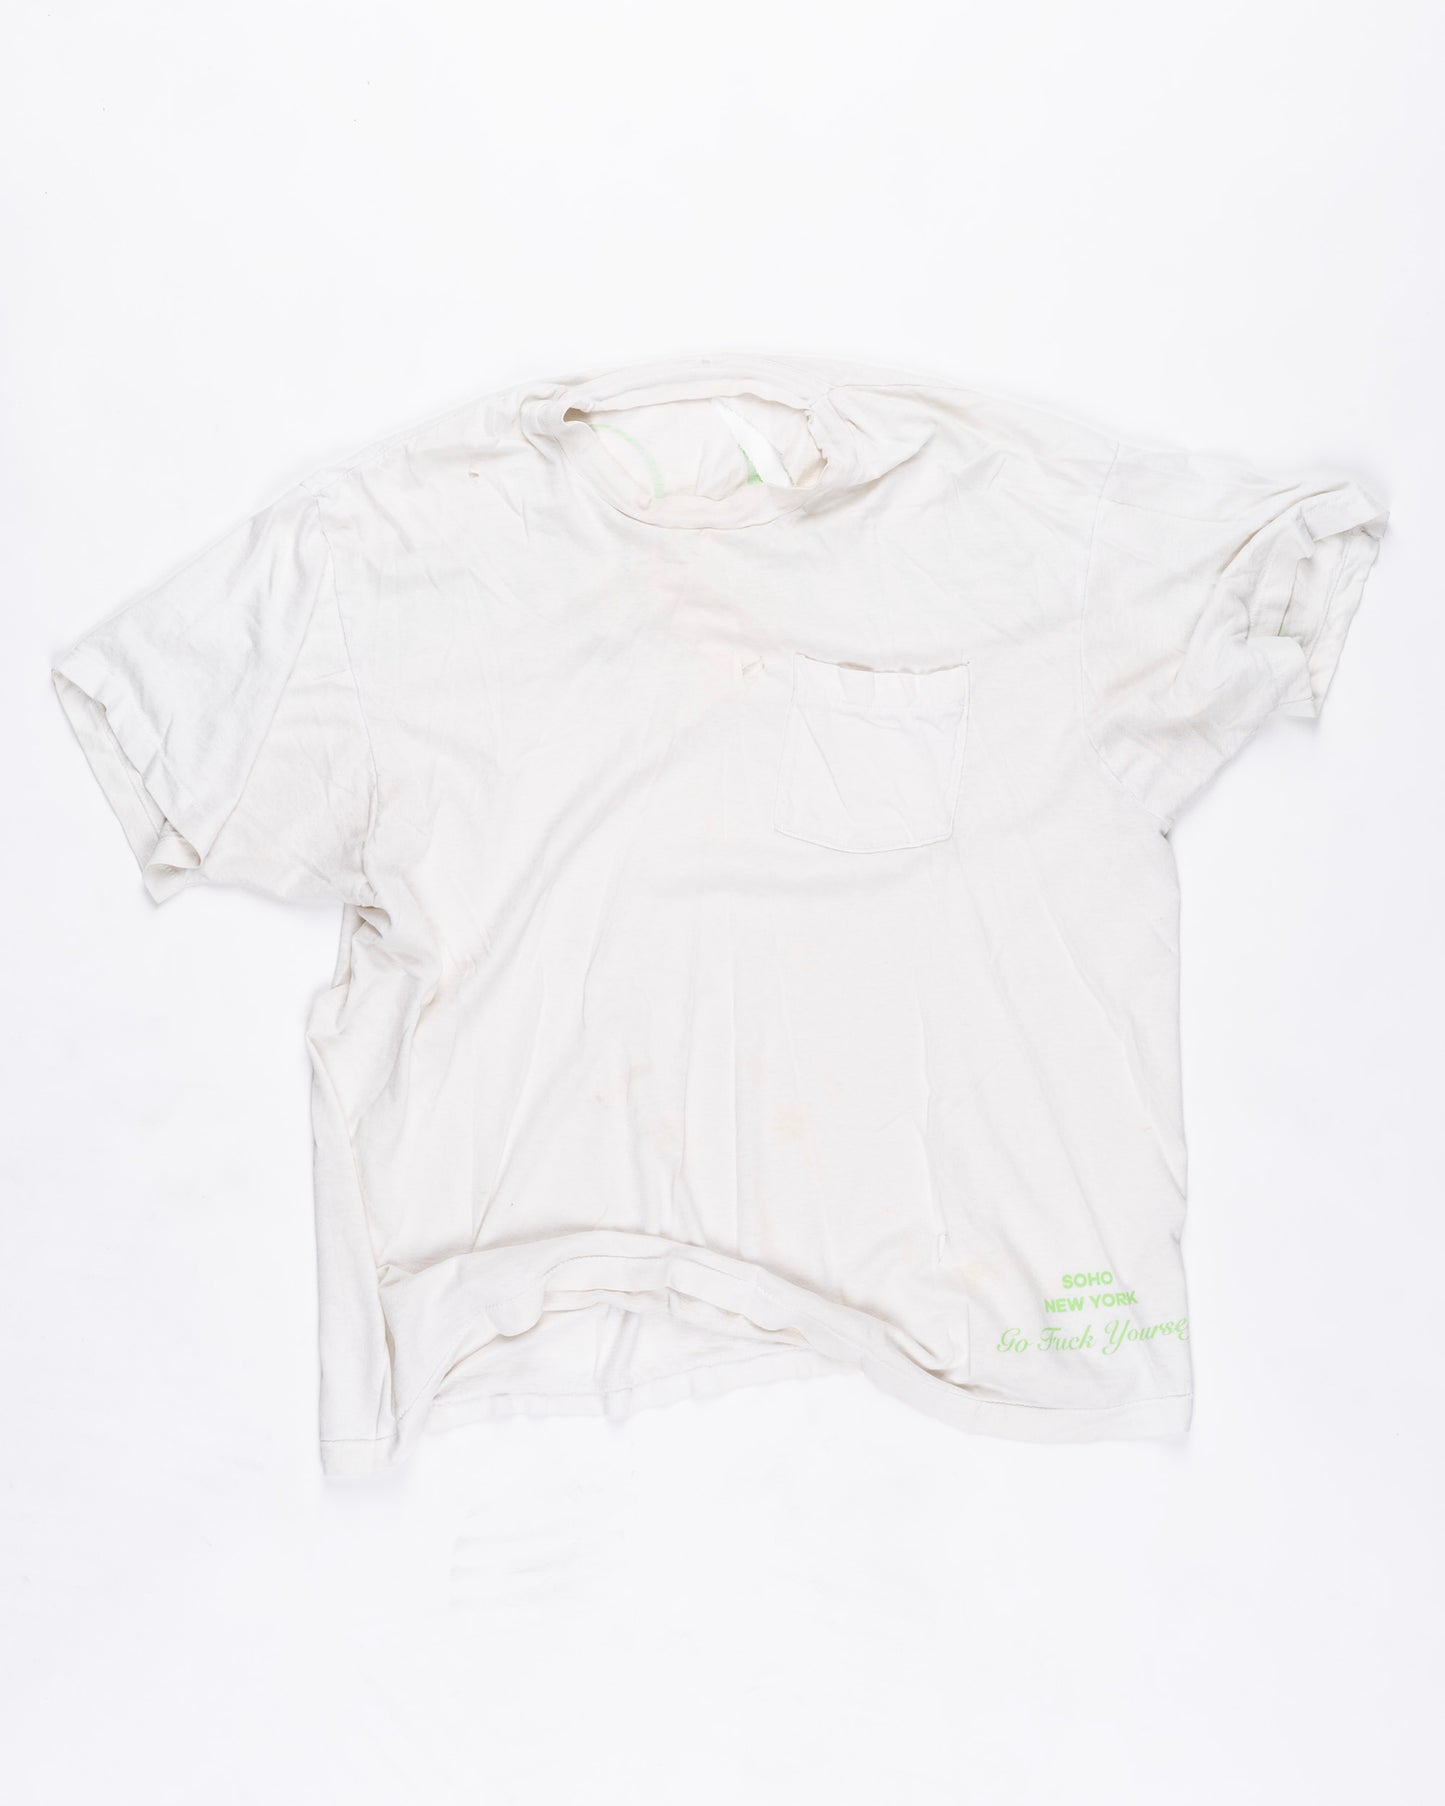 White With Pocket T-Shirt Size: XLarge